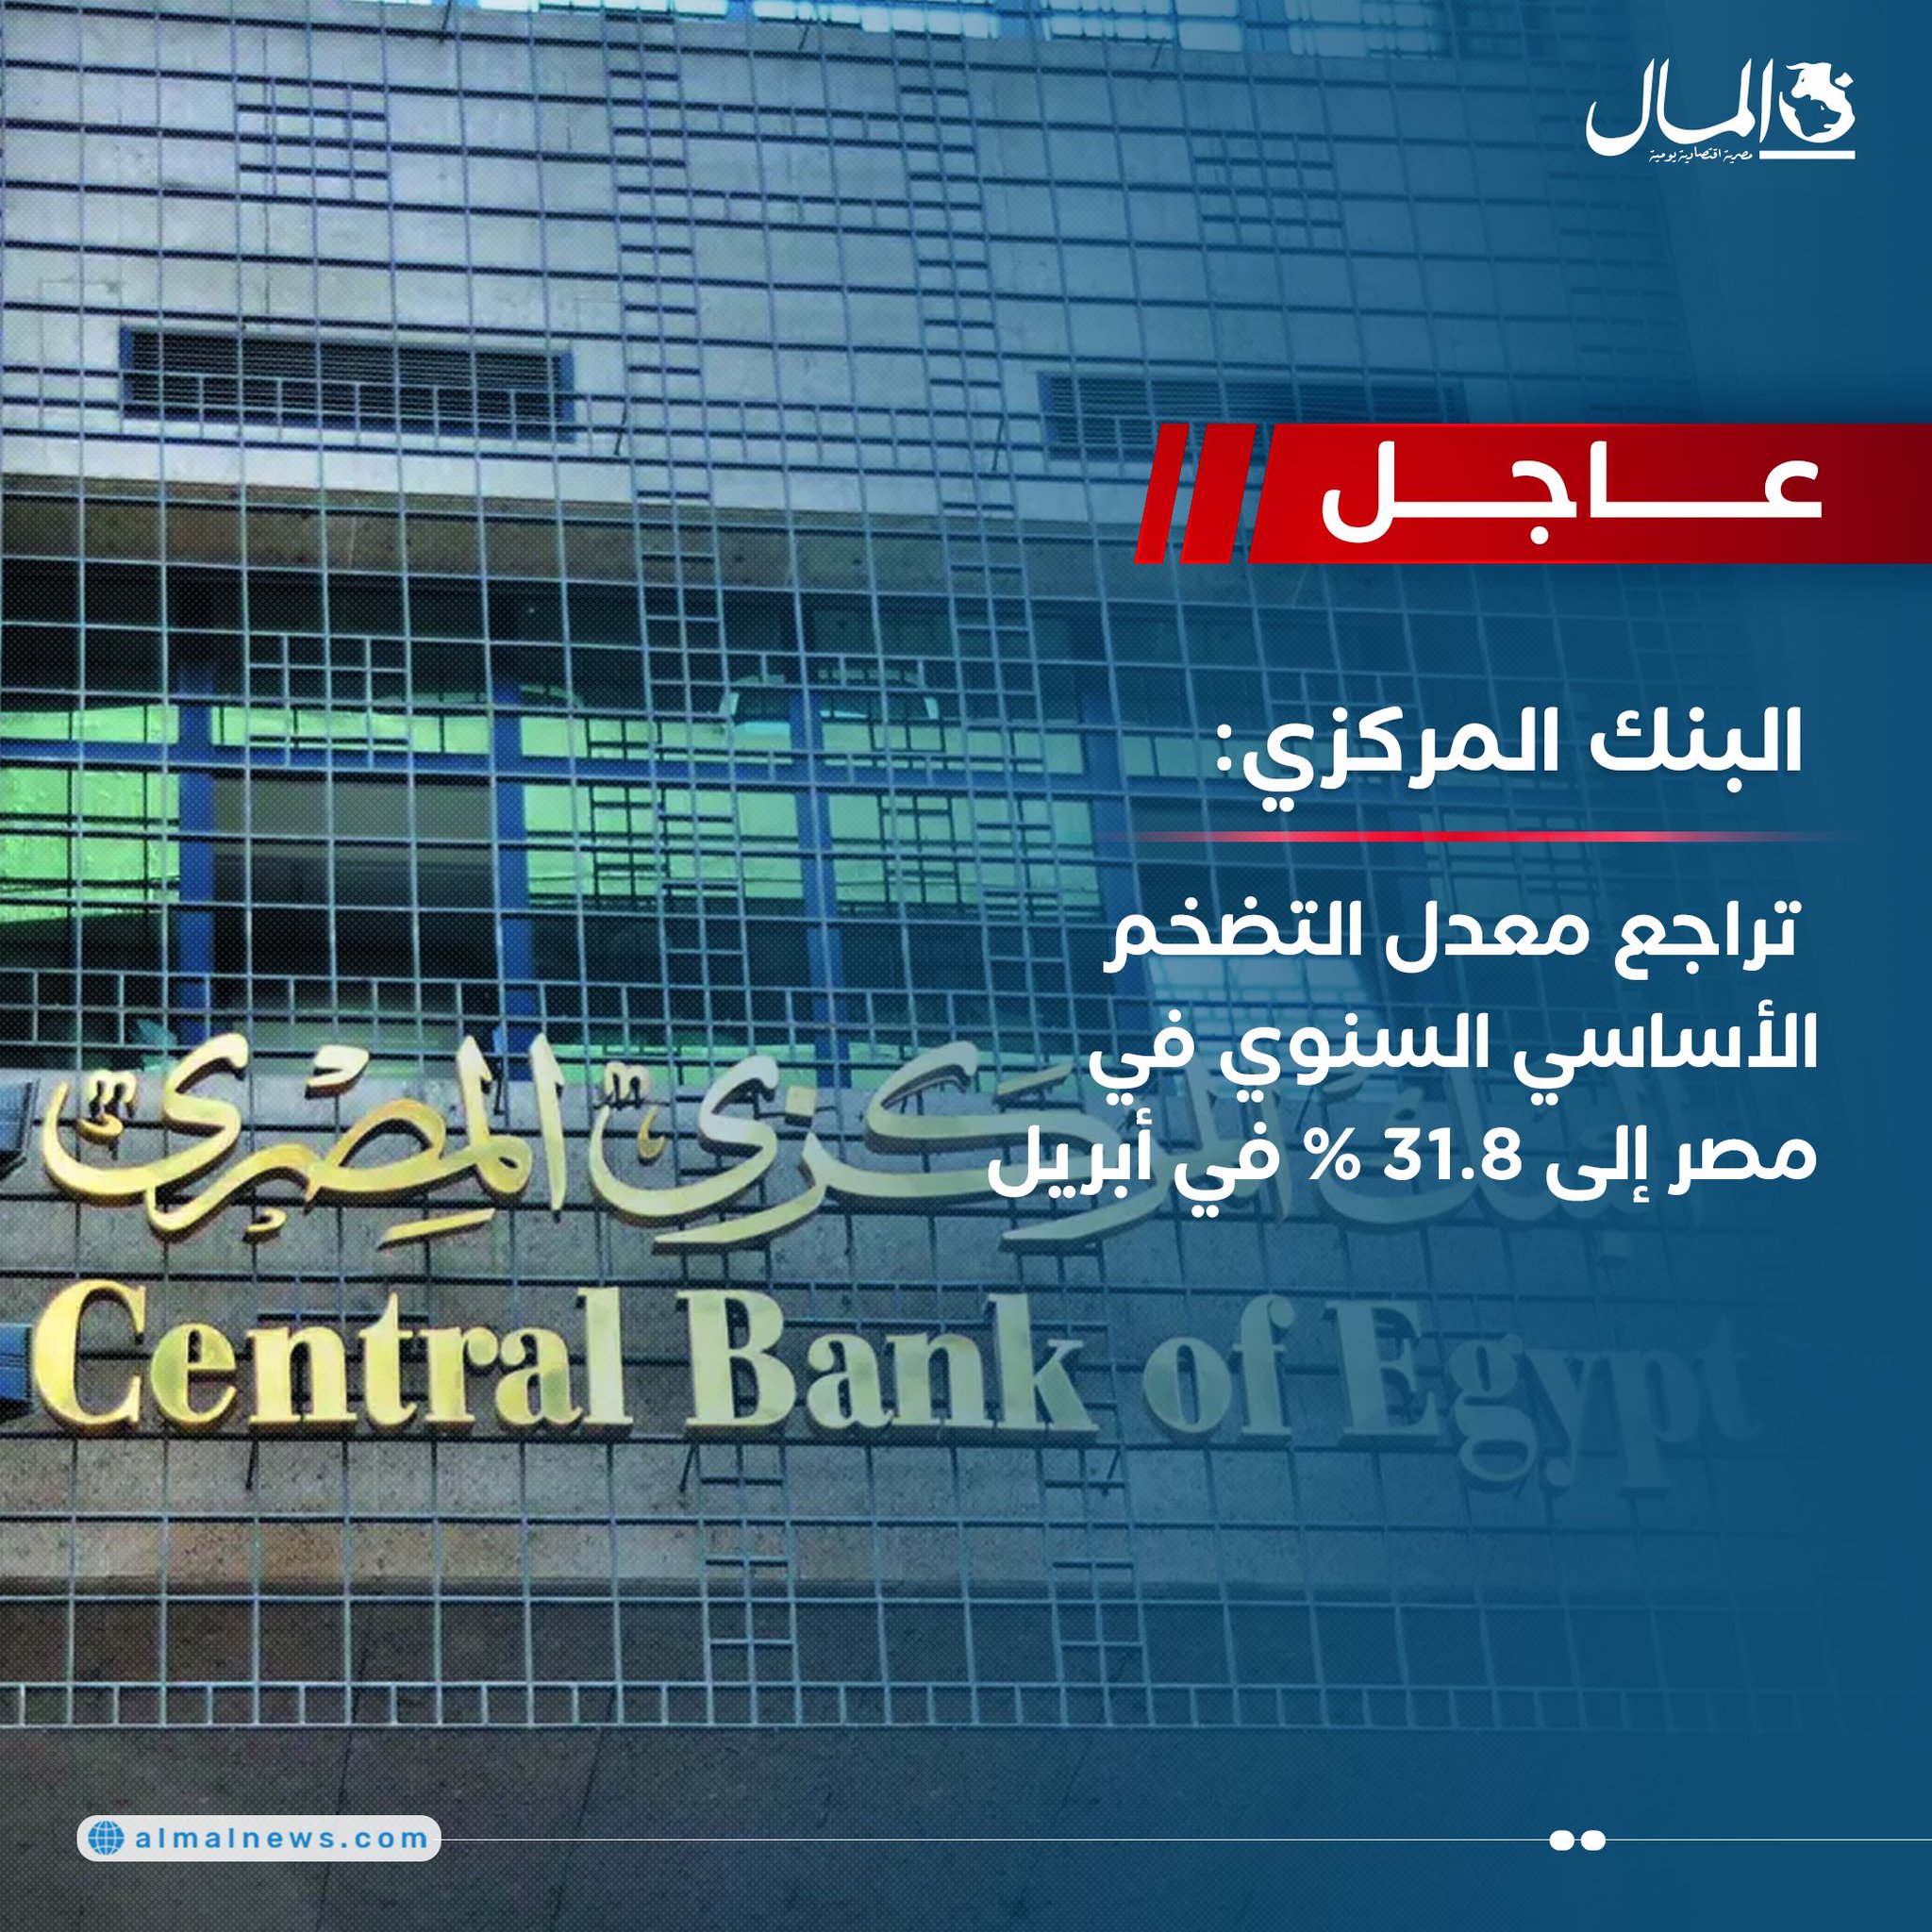 عاجل| البنك المركزي: تراجع معدل التضخم الأساسي السنوي في مصر إلى 31.8% في أبريل 